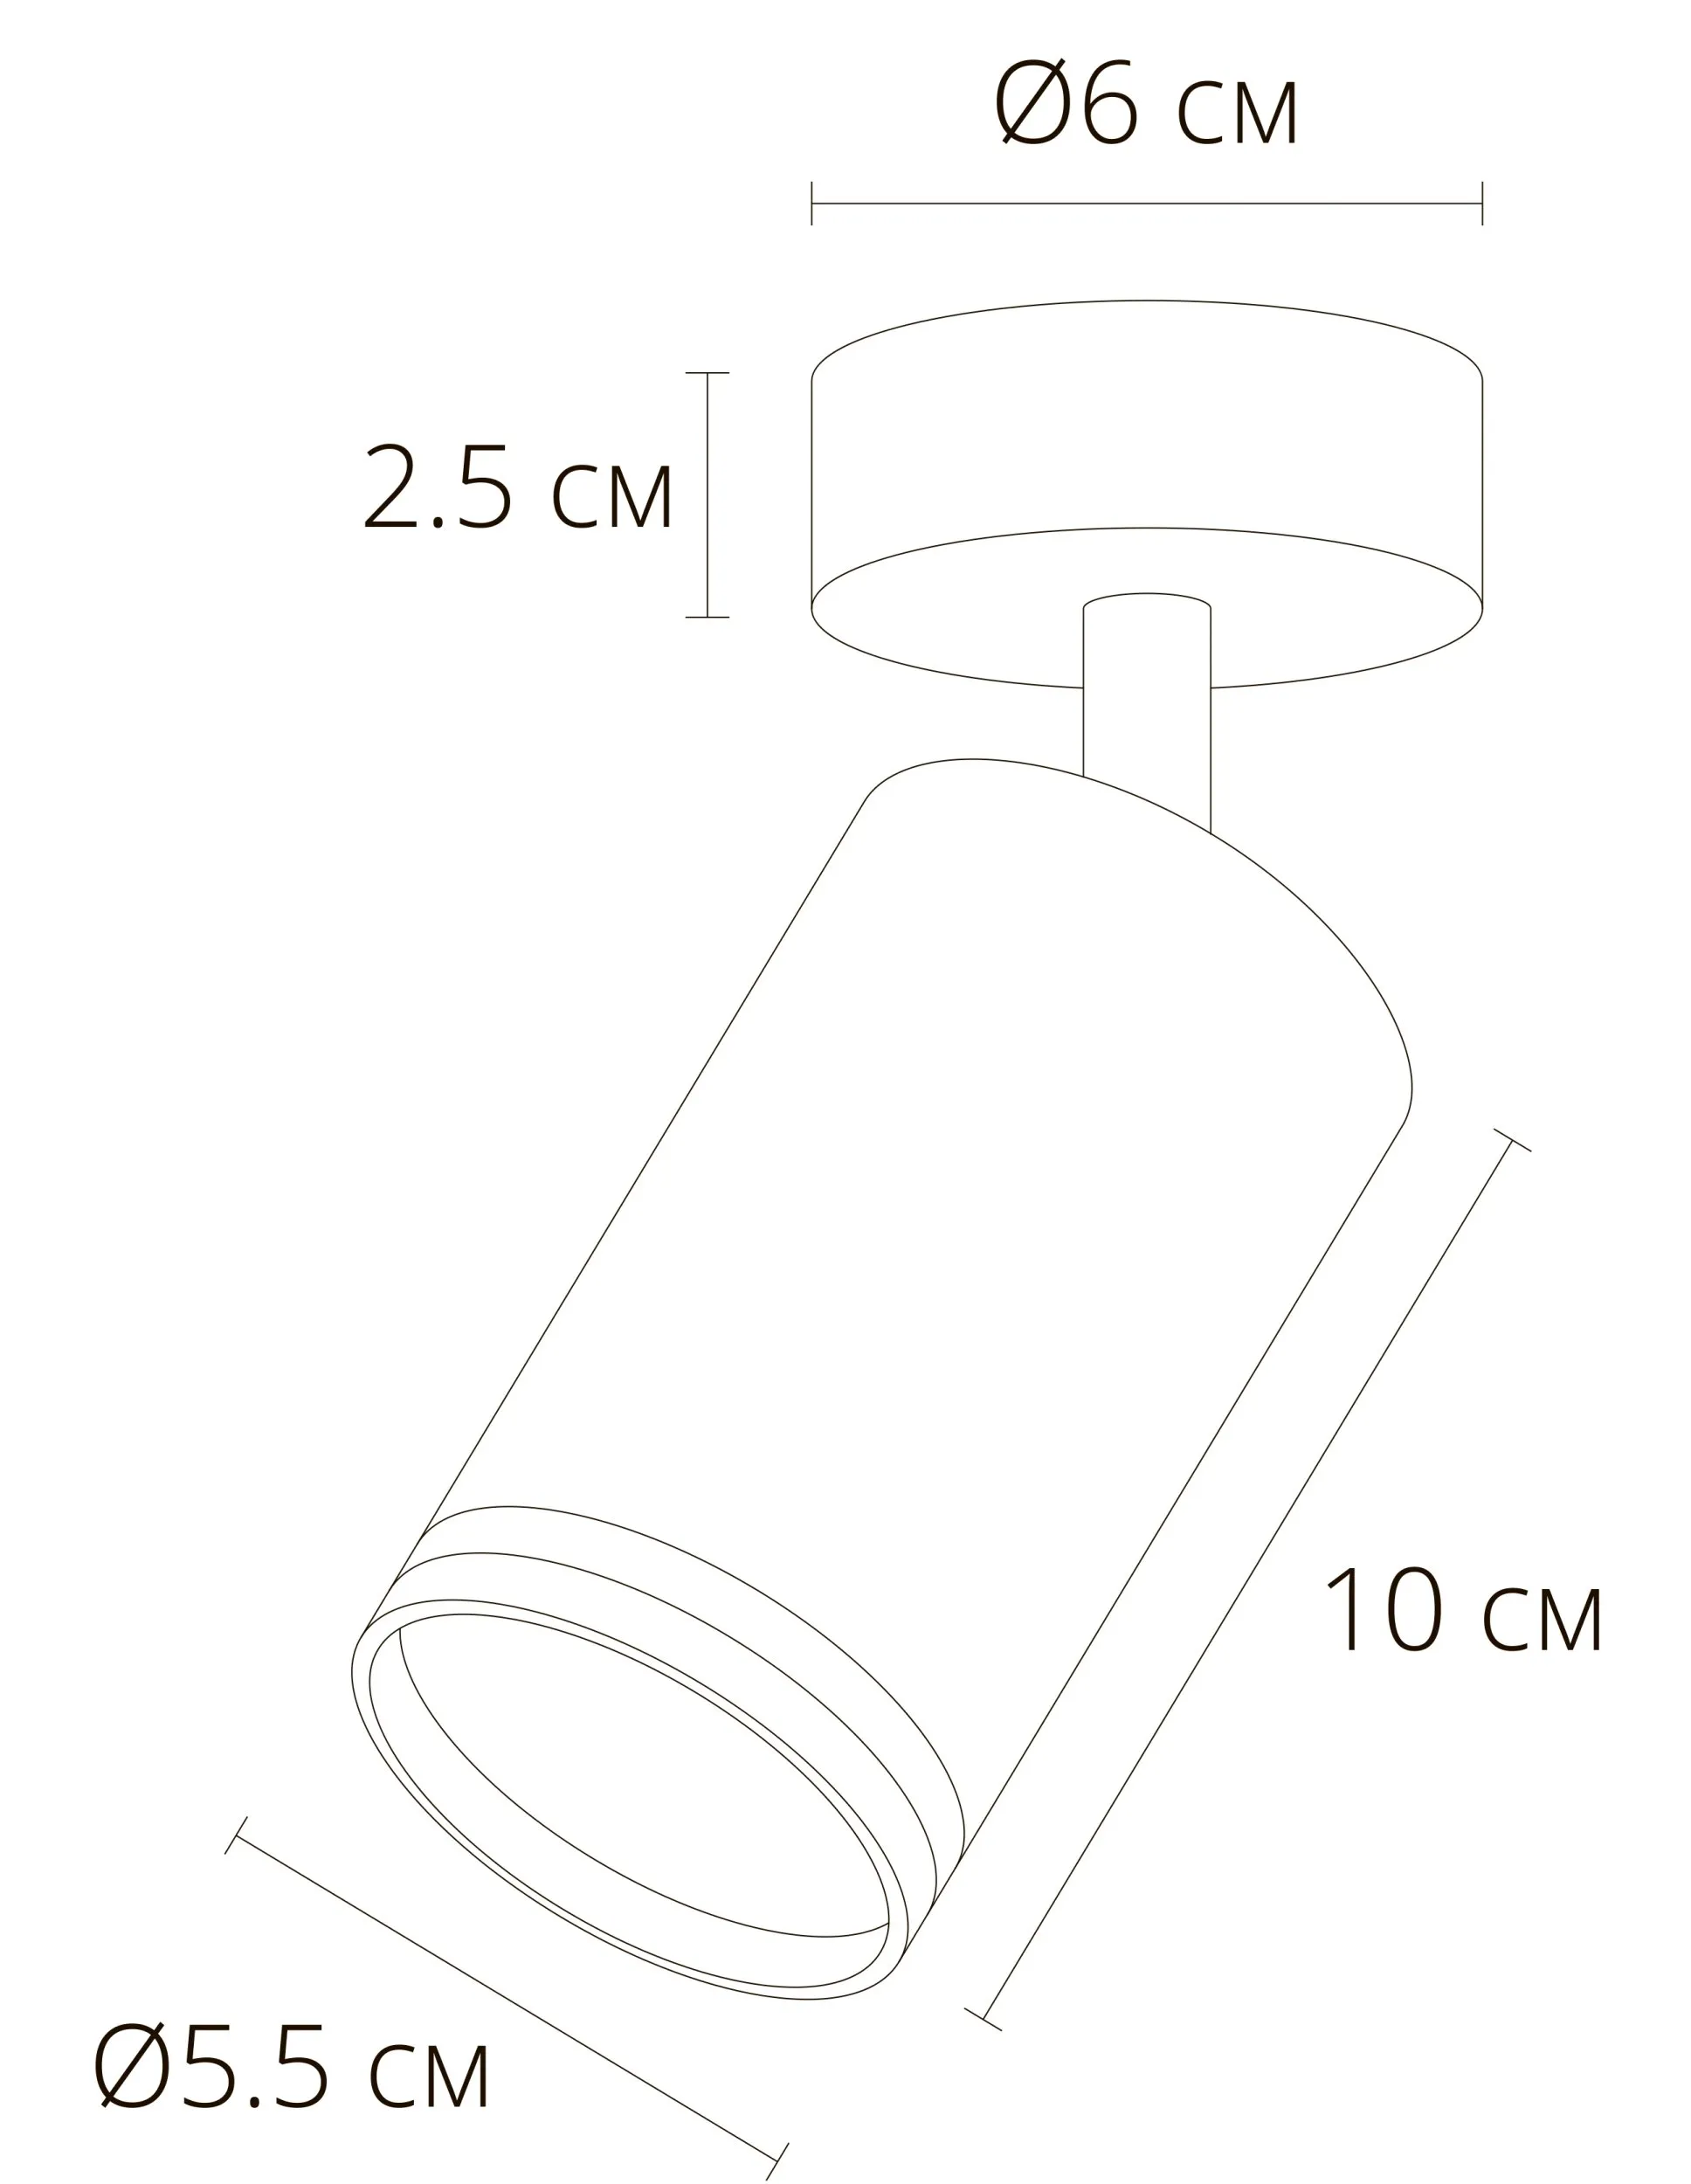 Точечный накладной светильник ARTE LAMP IMAI A2365PL-1BK